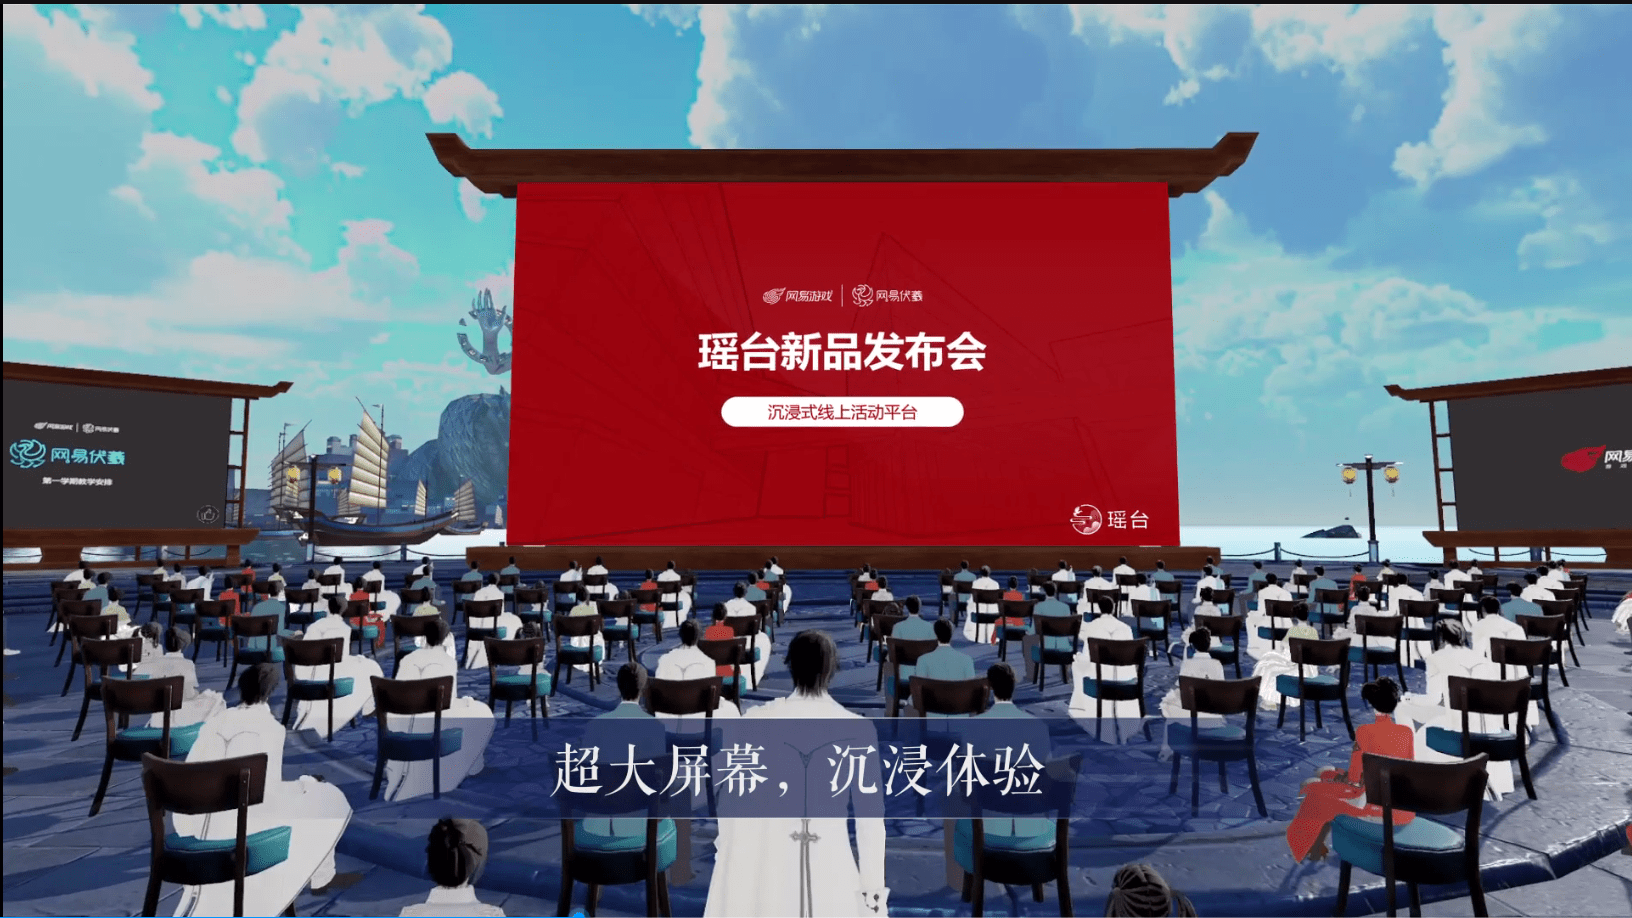 图片展示了一个户外活动场景，有很多椅子面向一个大屏幕，屏幕上有中文文字，背景是传统建筑和山水。